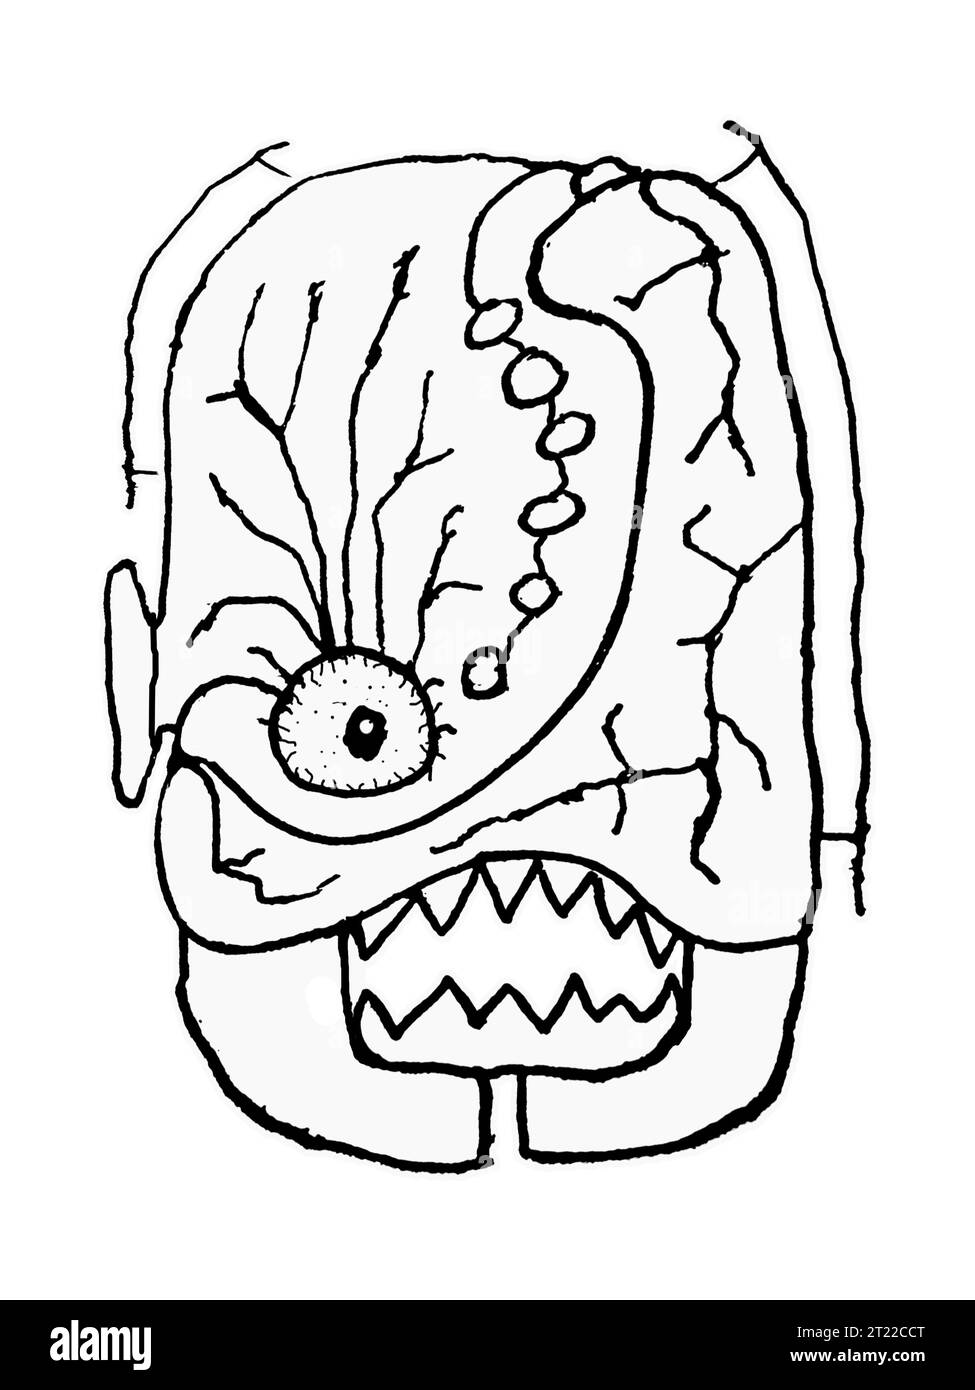 Ritratto frontale disegno isolato della testa di un mostro mutante con un'espressione sorprendente Foto Stock